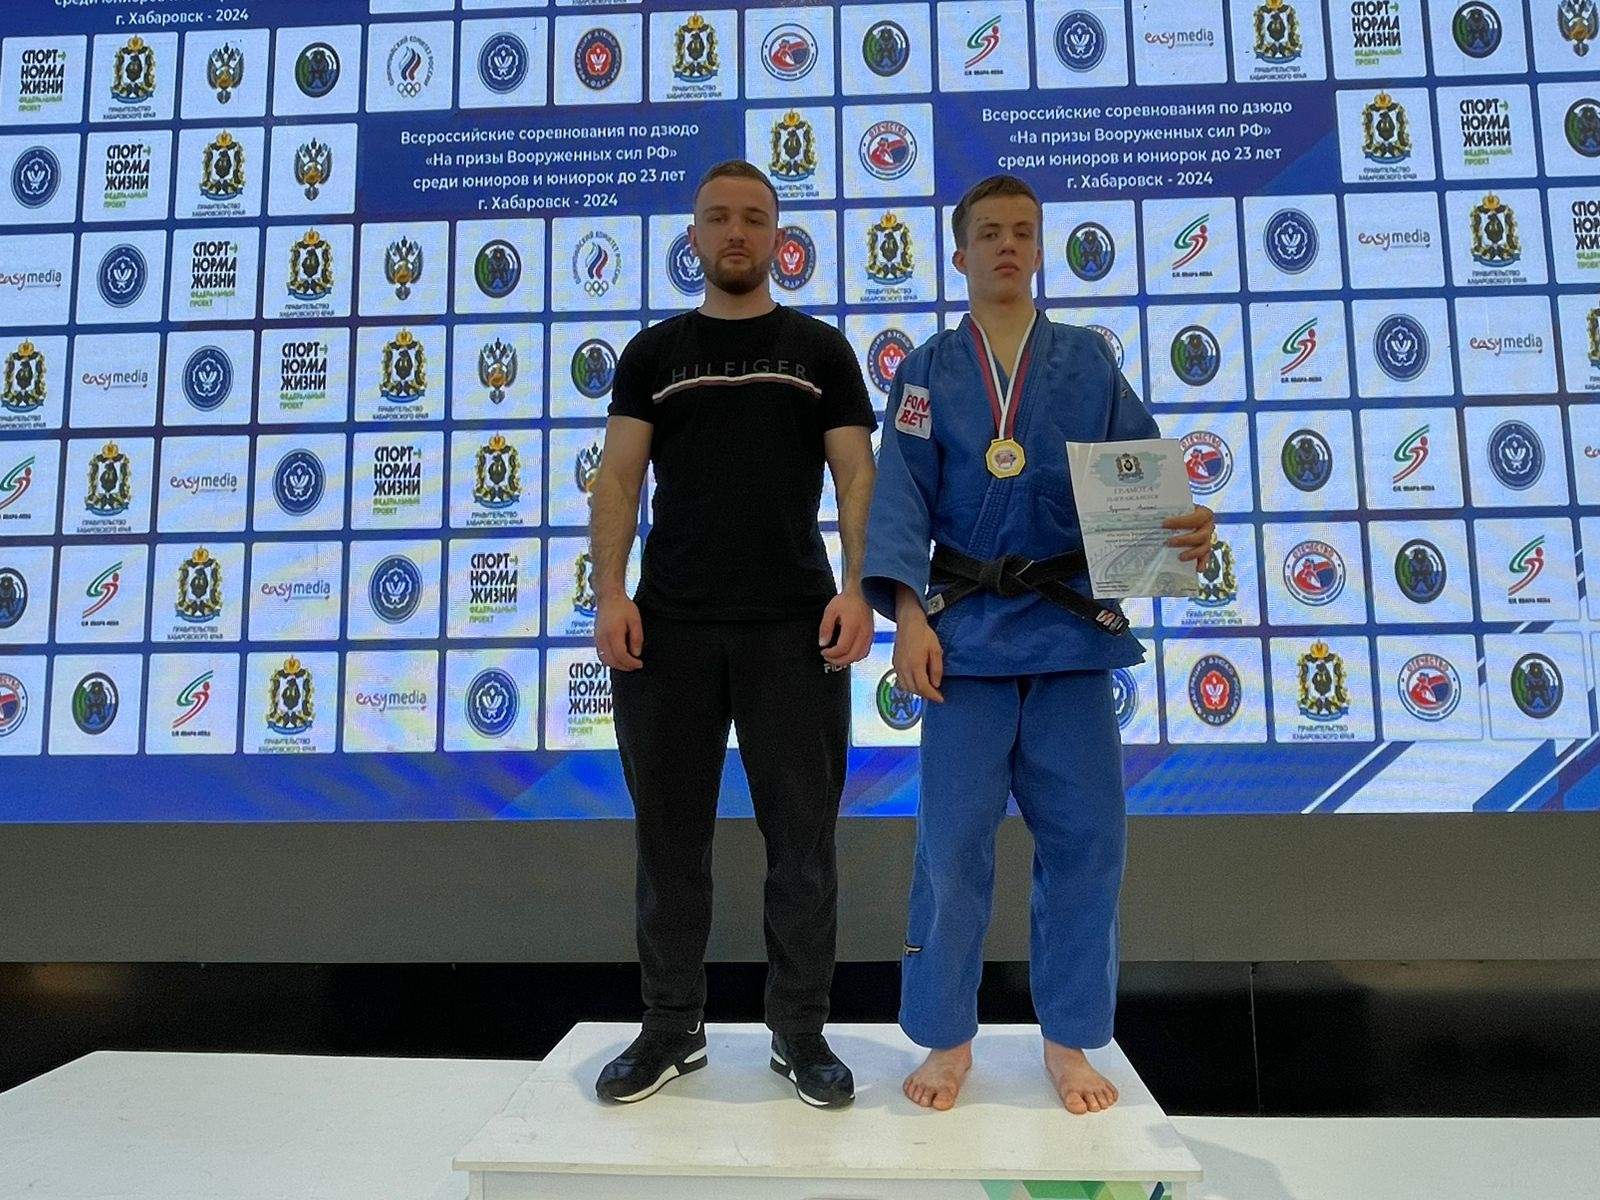 Студент ВВГУ стал победителем Всероссийских соревнований по дзюдо